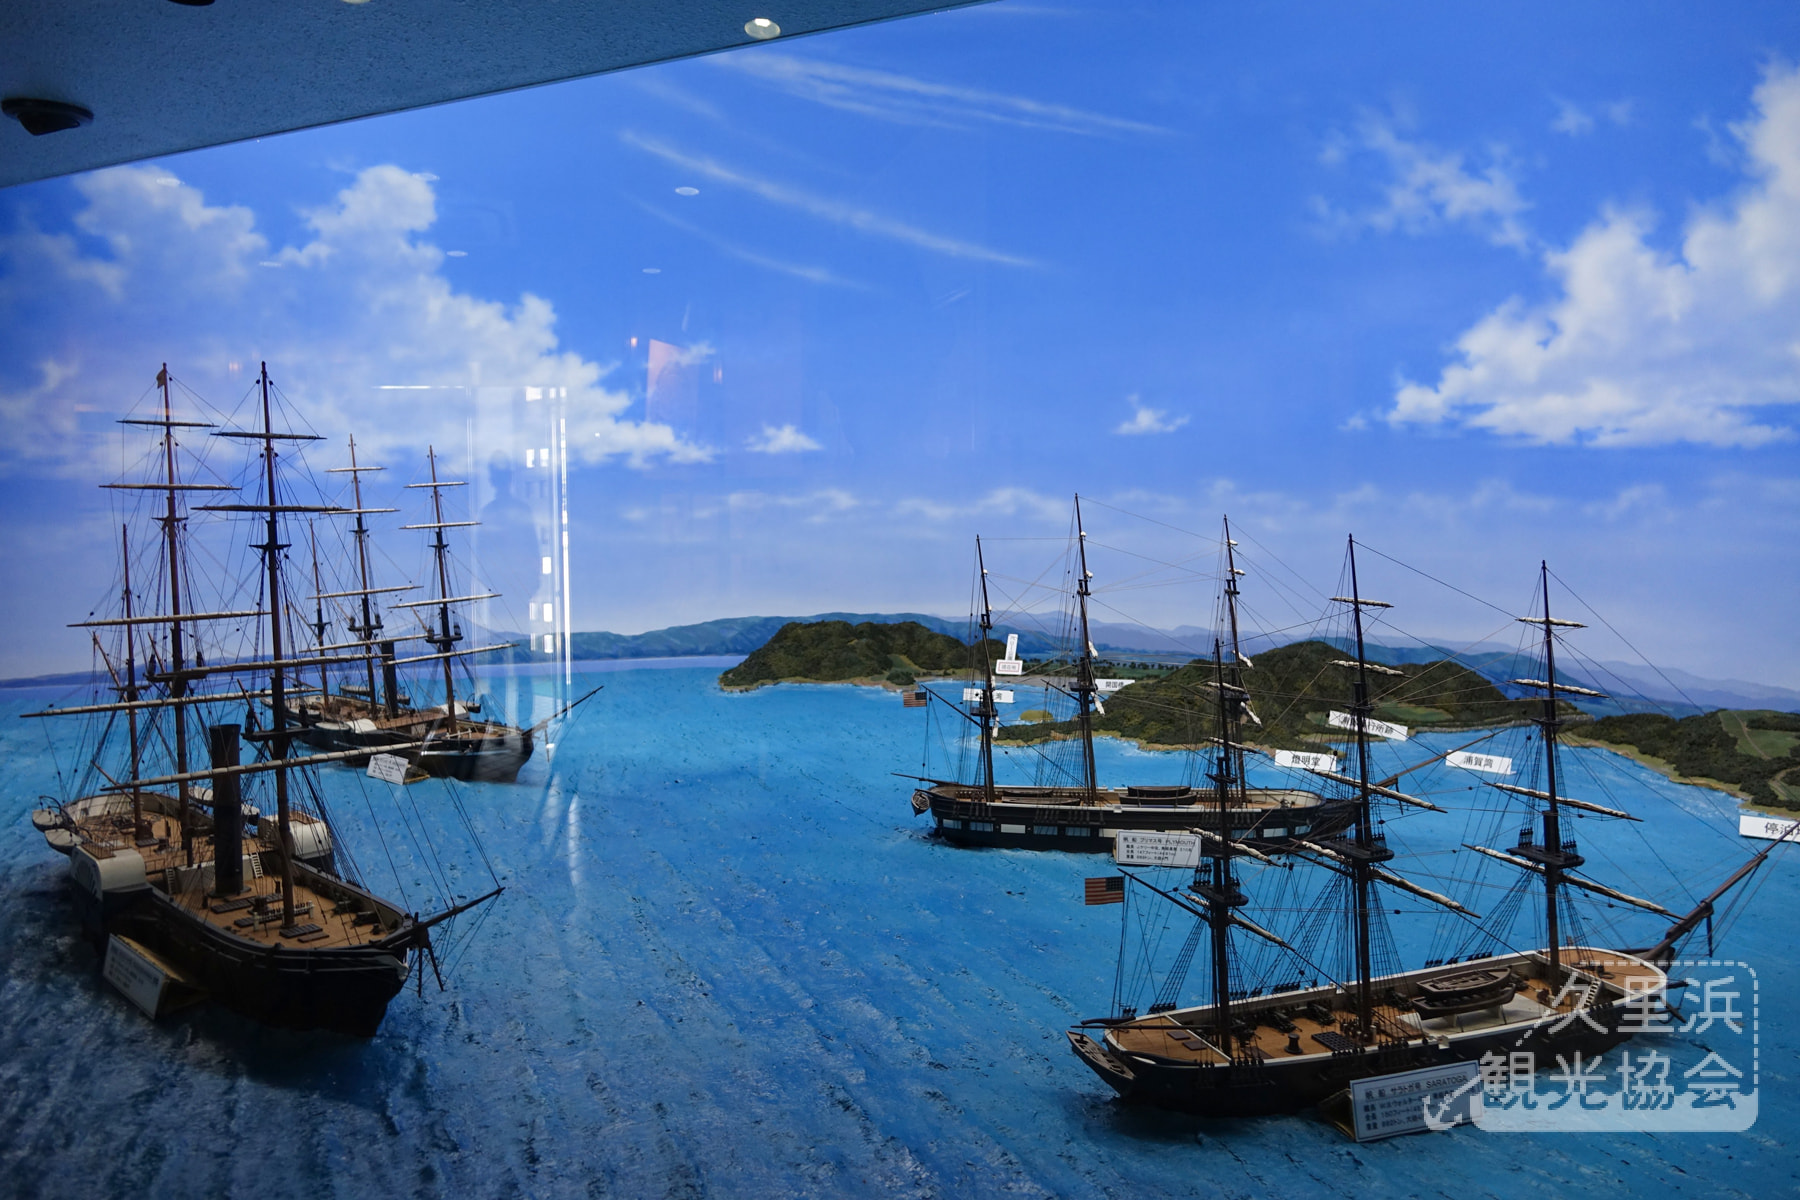 ペリー記念館・黒船来航を再現したジオラマ模型